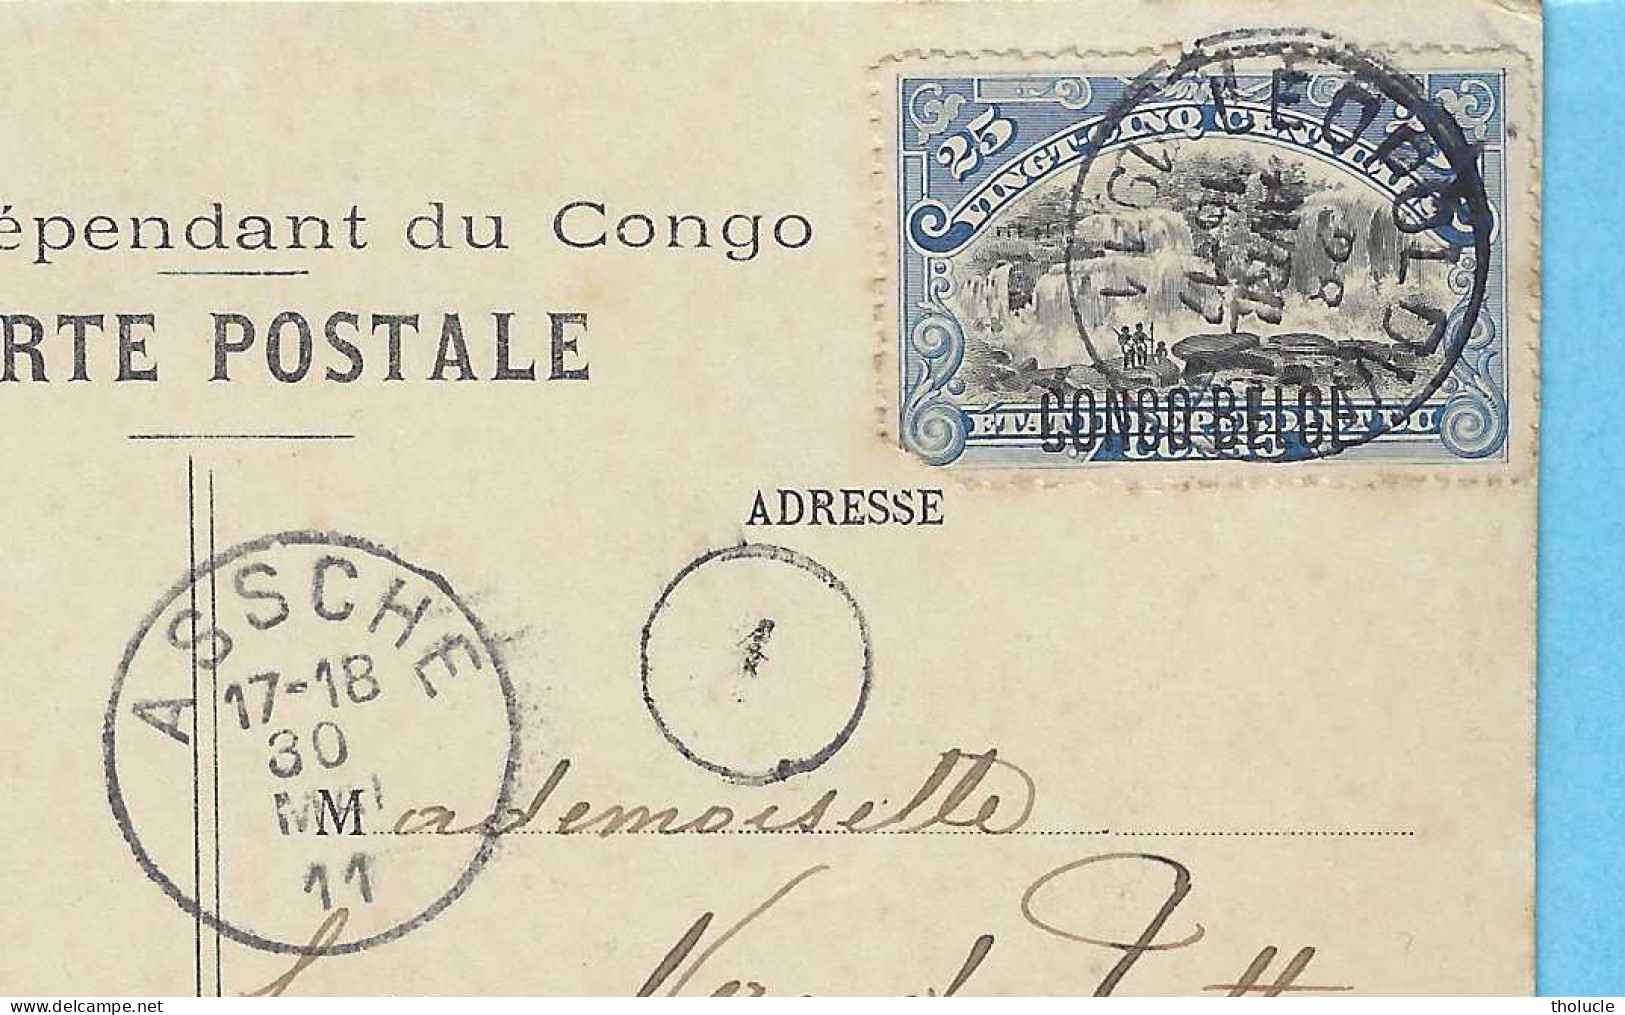 Timbre Mols 25c-Etat Indépendant Du Congo Surchargé "CONGO BELGE" 33L-cachet LEOPOLDVILLE 1911-Banana-Av. De Cocotiers - Covers & Documents